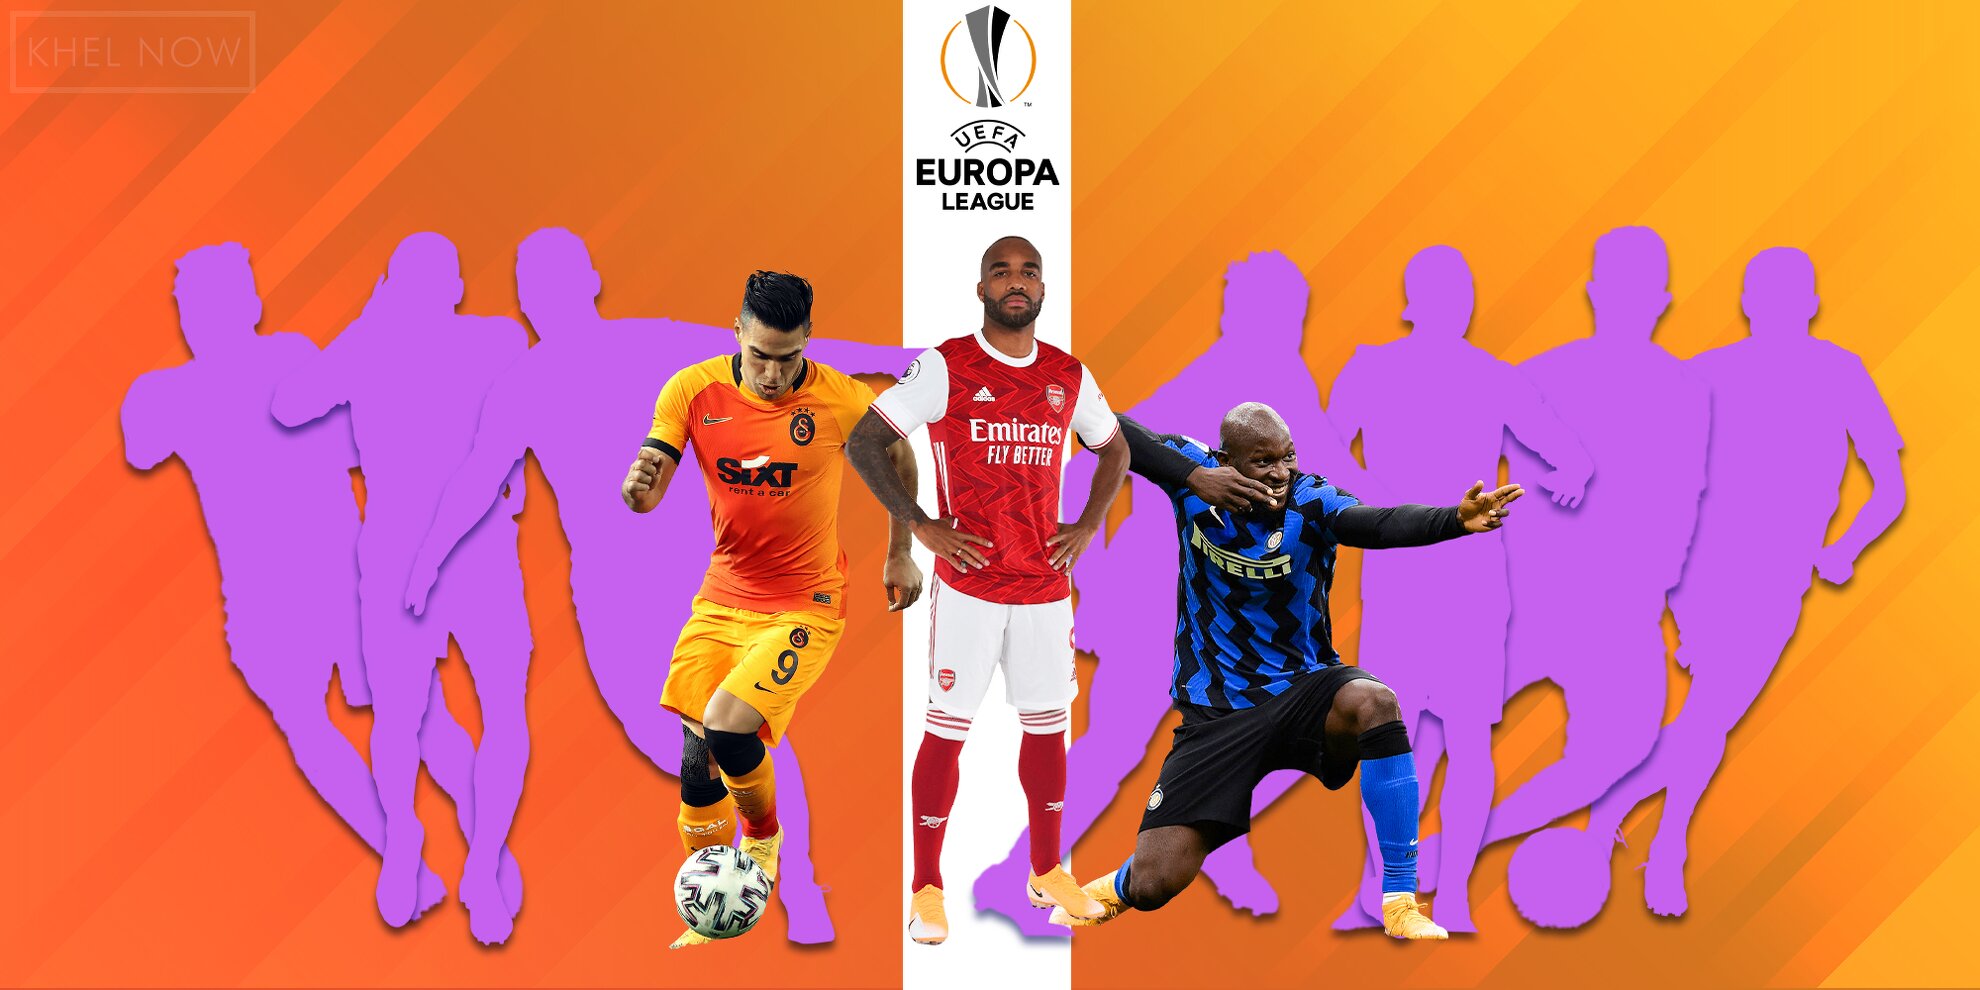 UEFA Europa League highest scorers